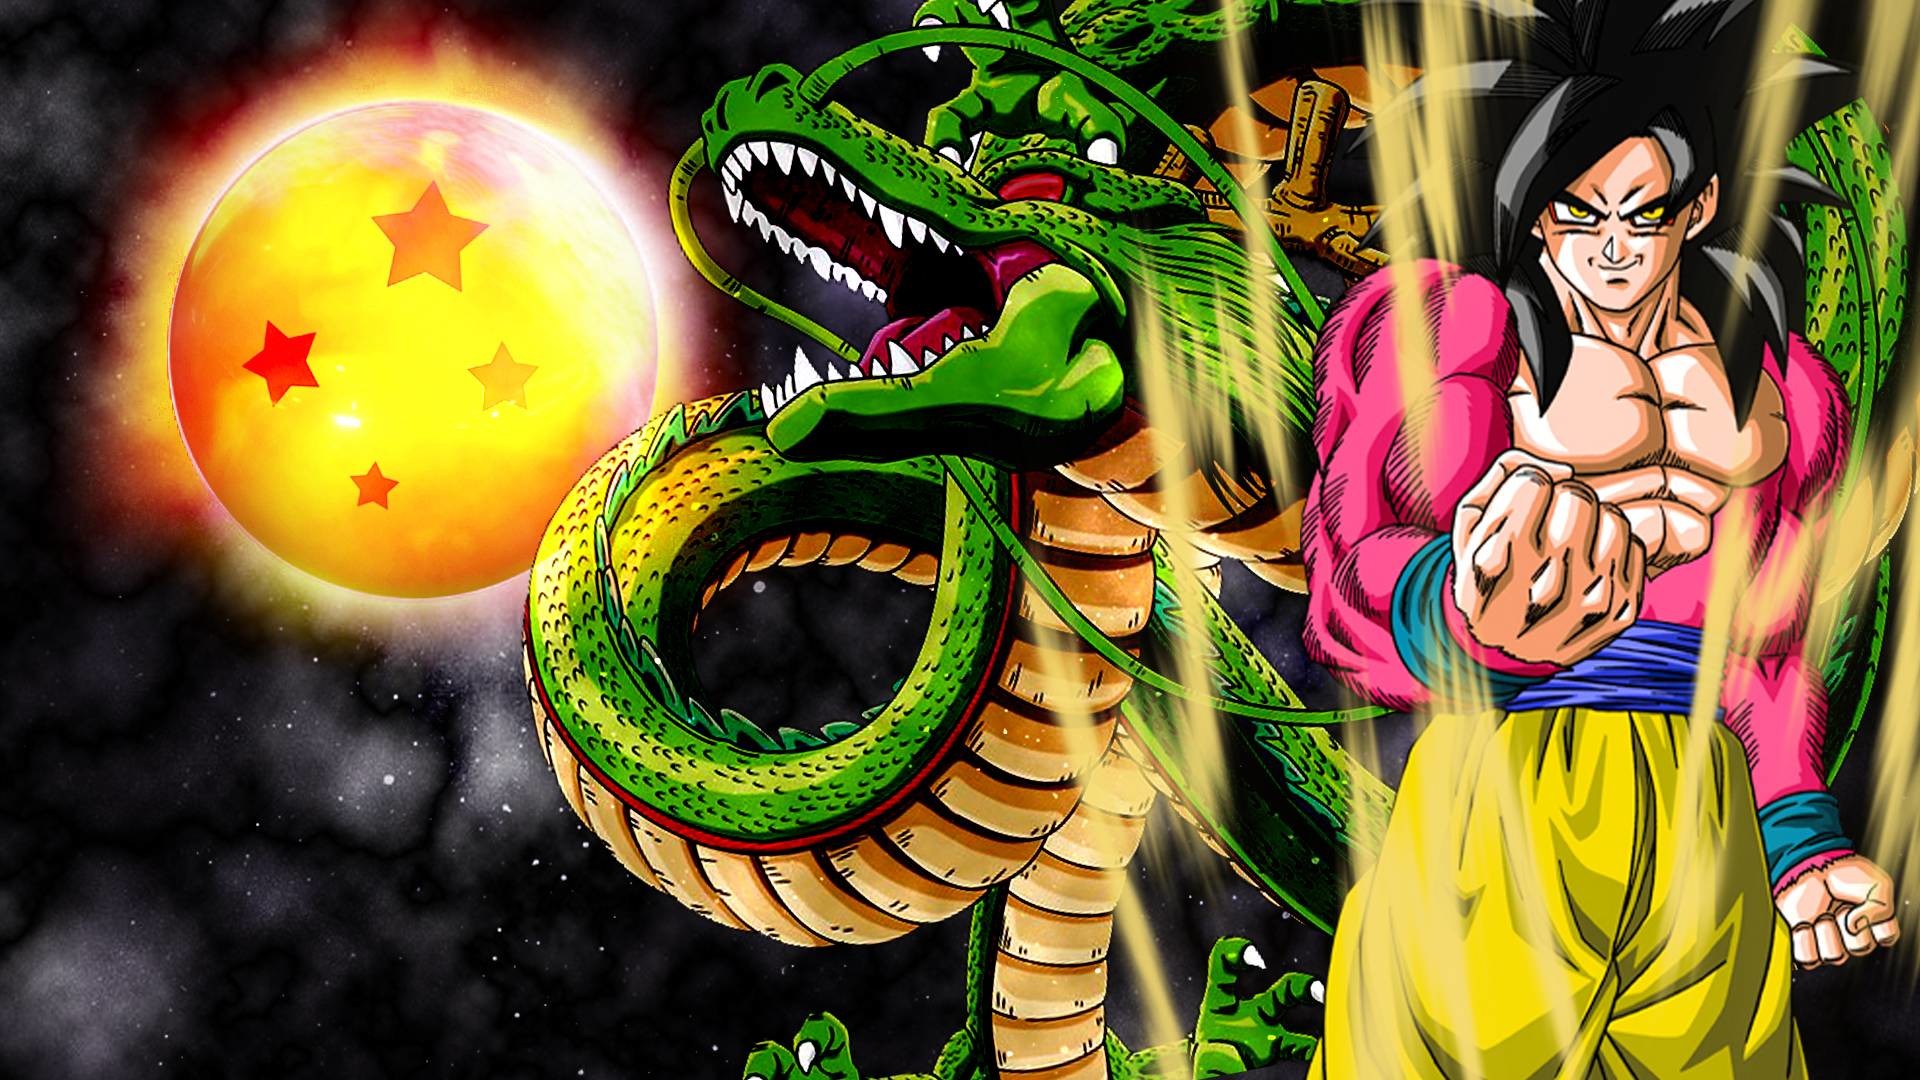 Goku  Super Saiyan 4  Anime dragon ball goku Dragon ball painting  Dragon ball art goku